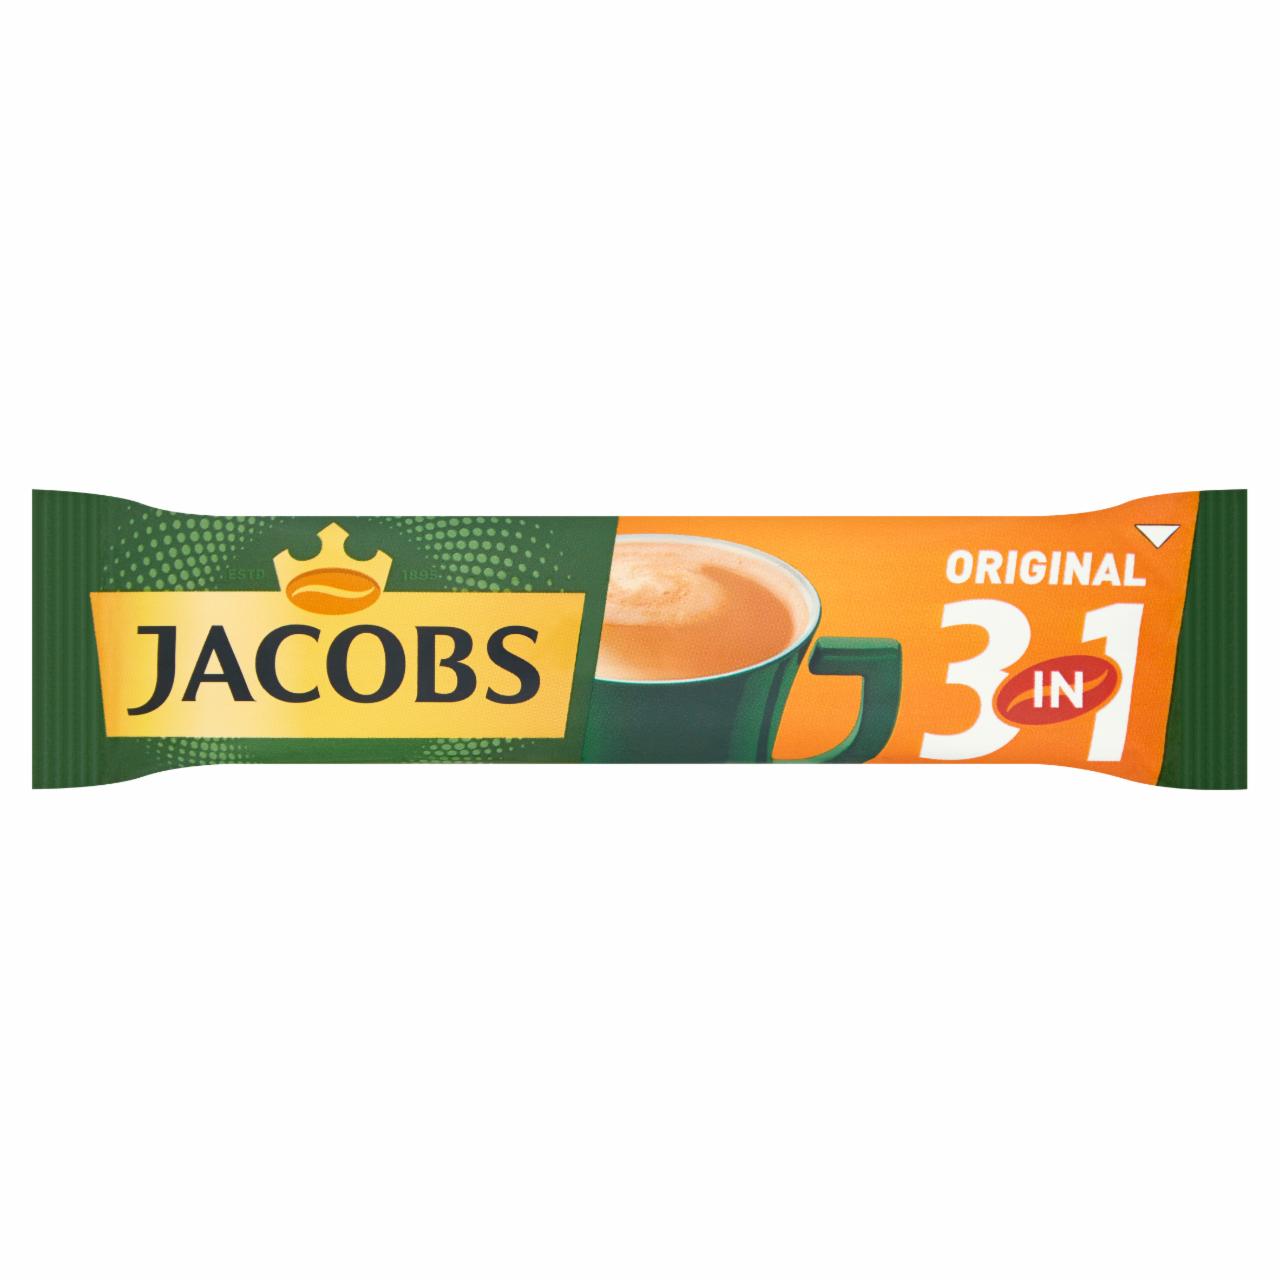 Zdjęcia - Jacobs Original 3in1 Rozpuszczalny napój kawowy 15,2 g